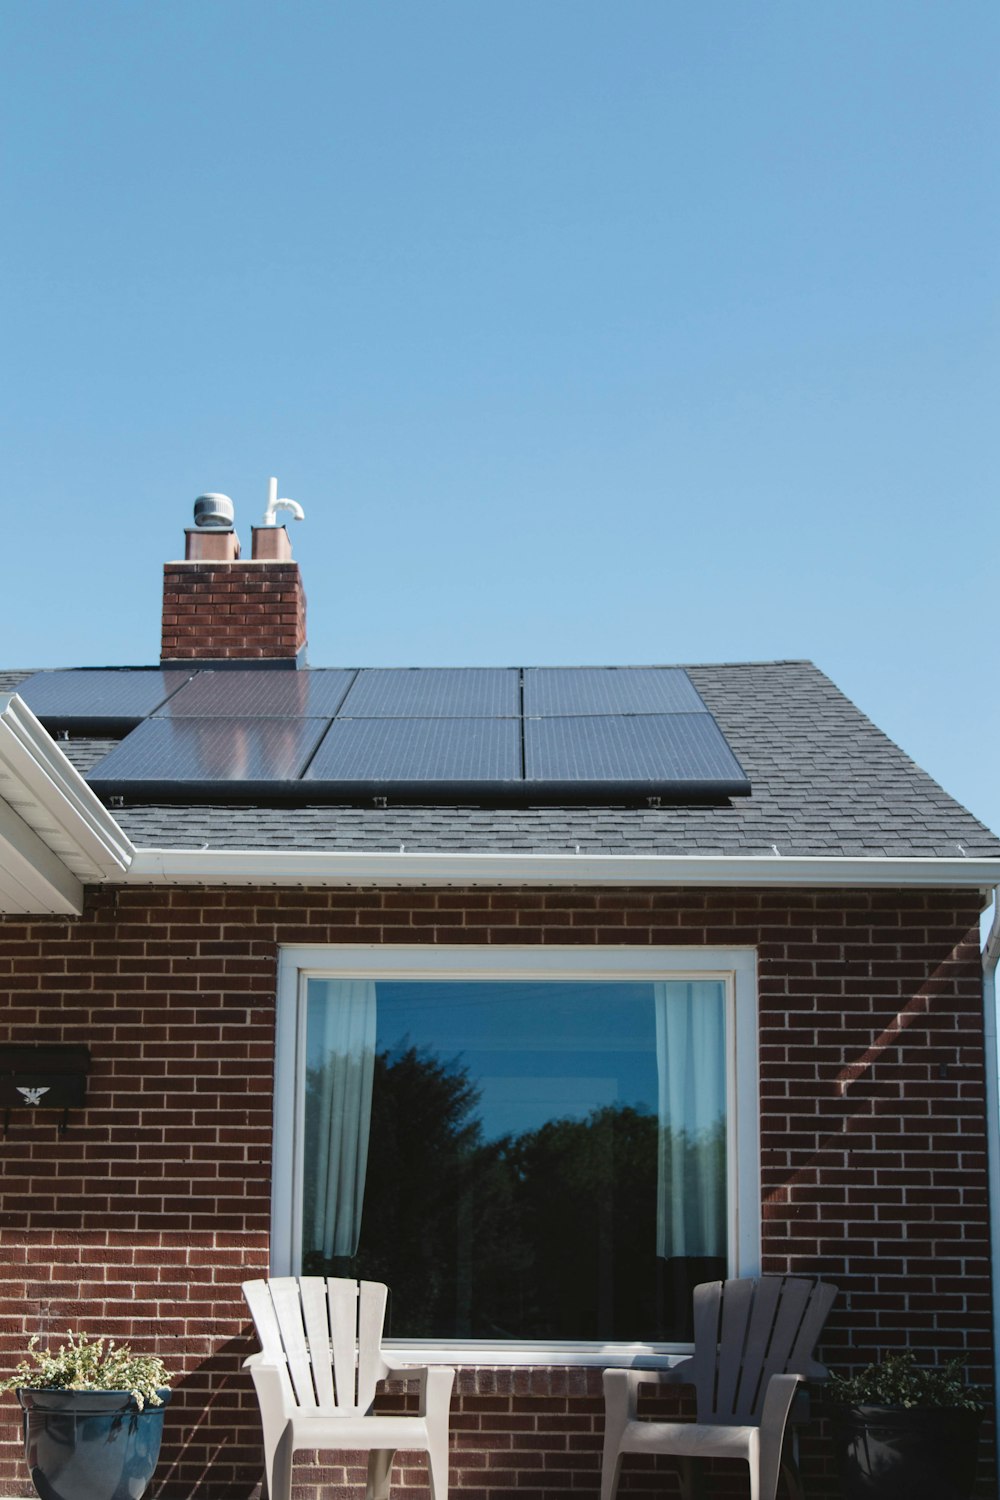 Casa in mattoni marroni con pannelli solari sul tetto